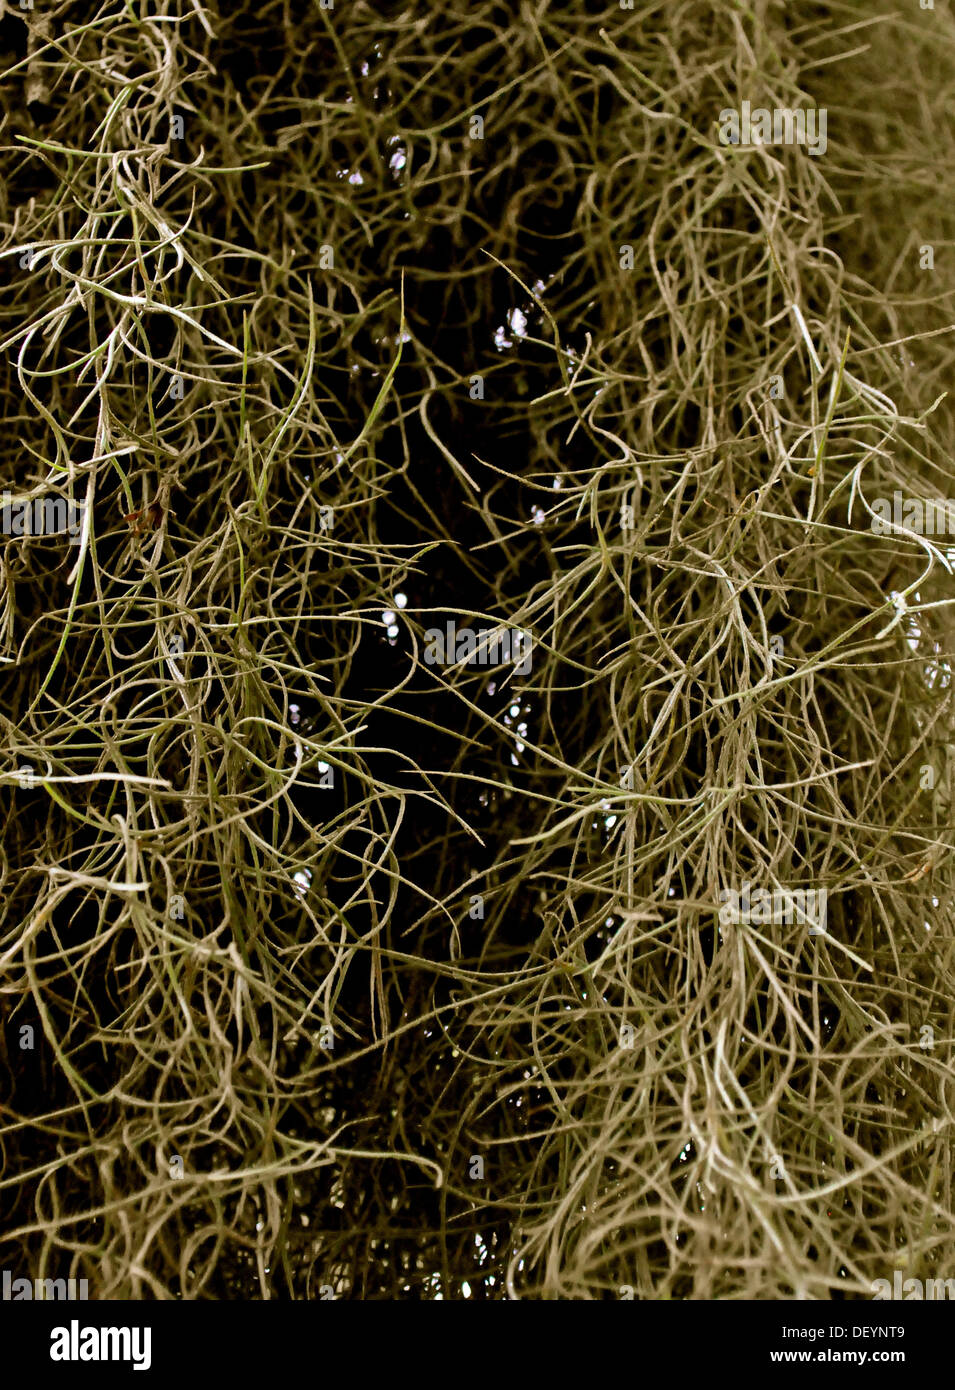 Whispy mossy background Stock Photo